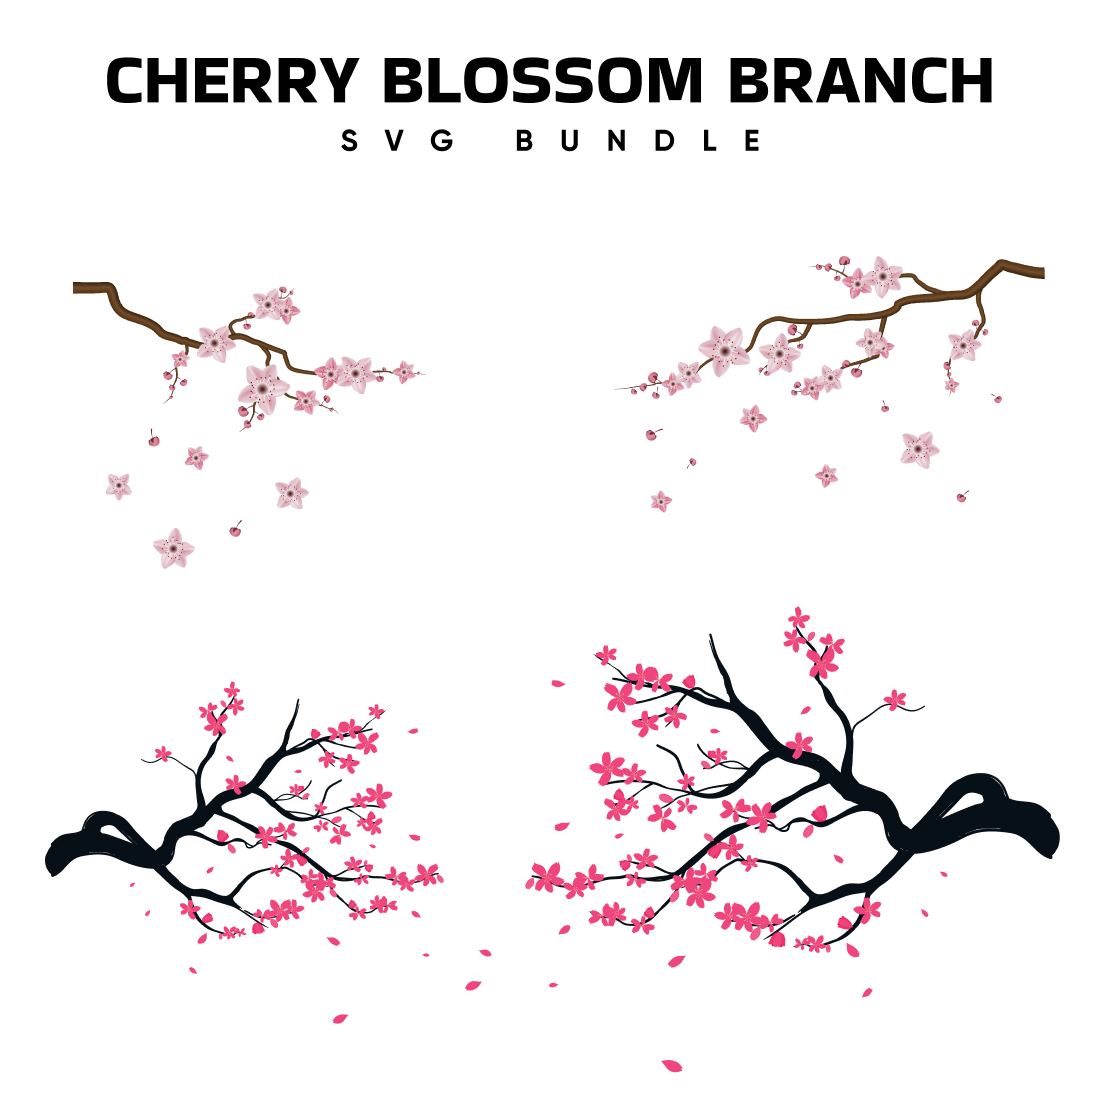 Cherry Blossom Branch SVG.